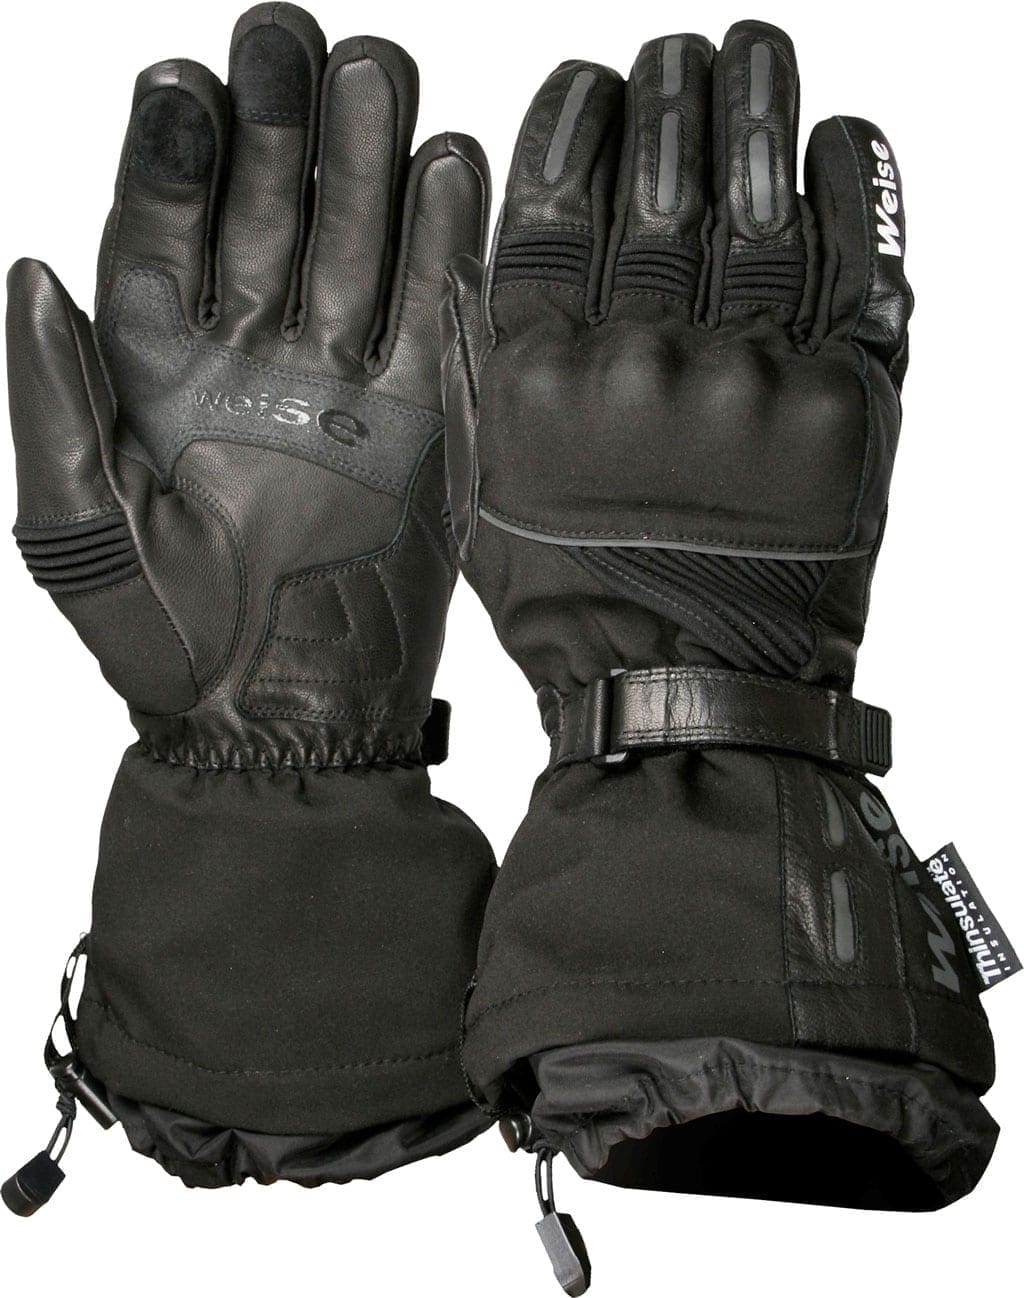 Top Ten Budget Motorcycle Winter Gloves under £100